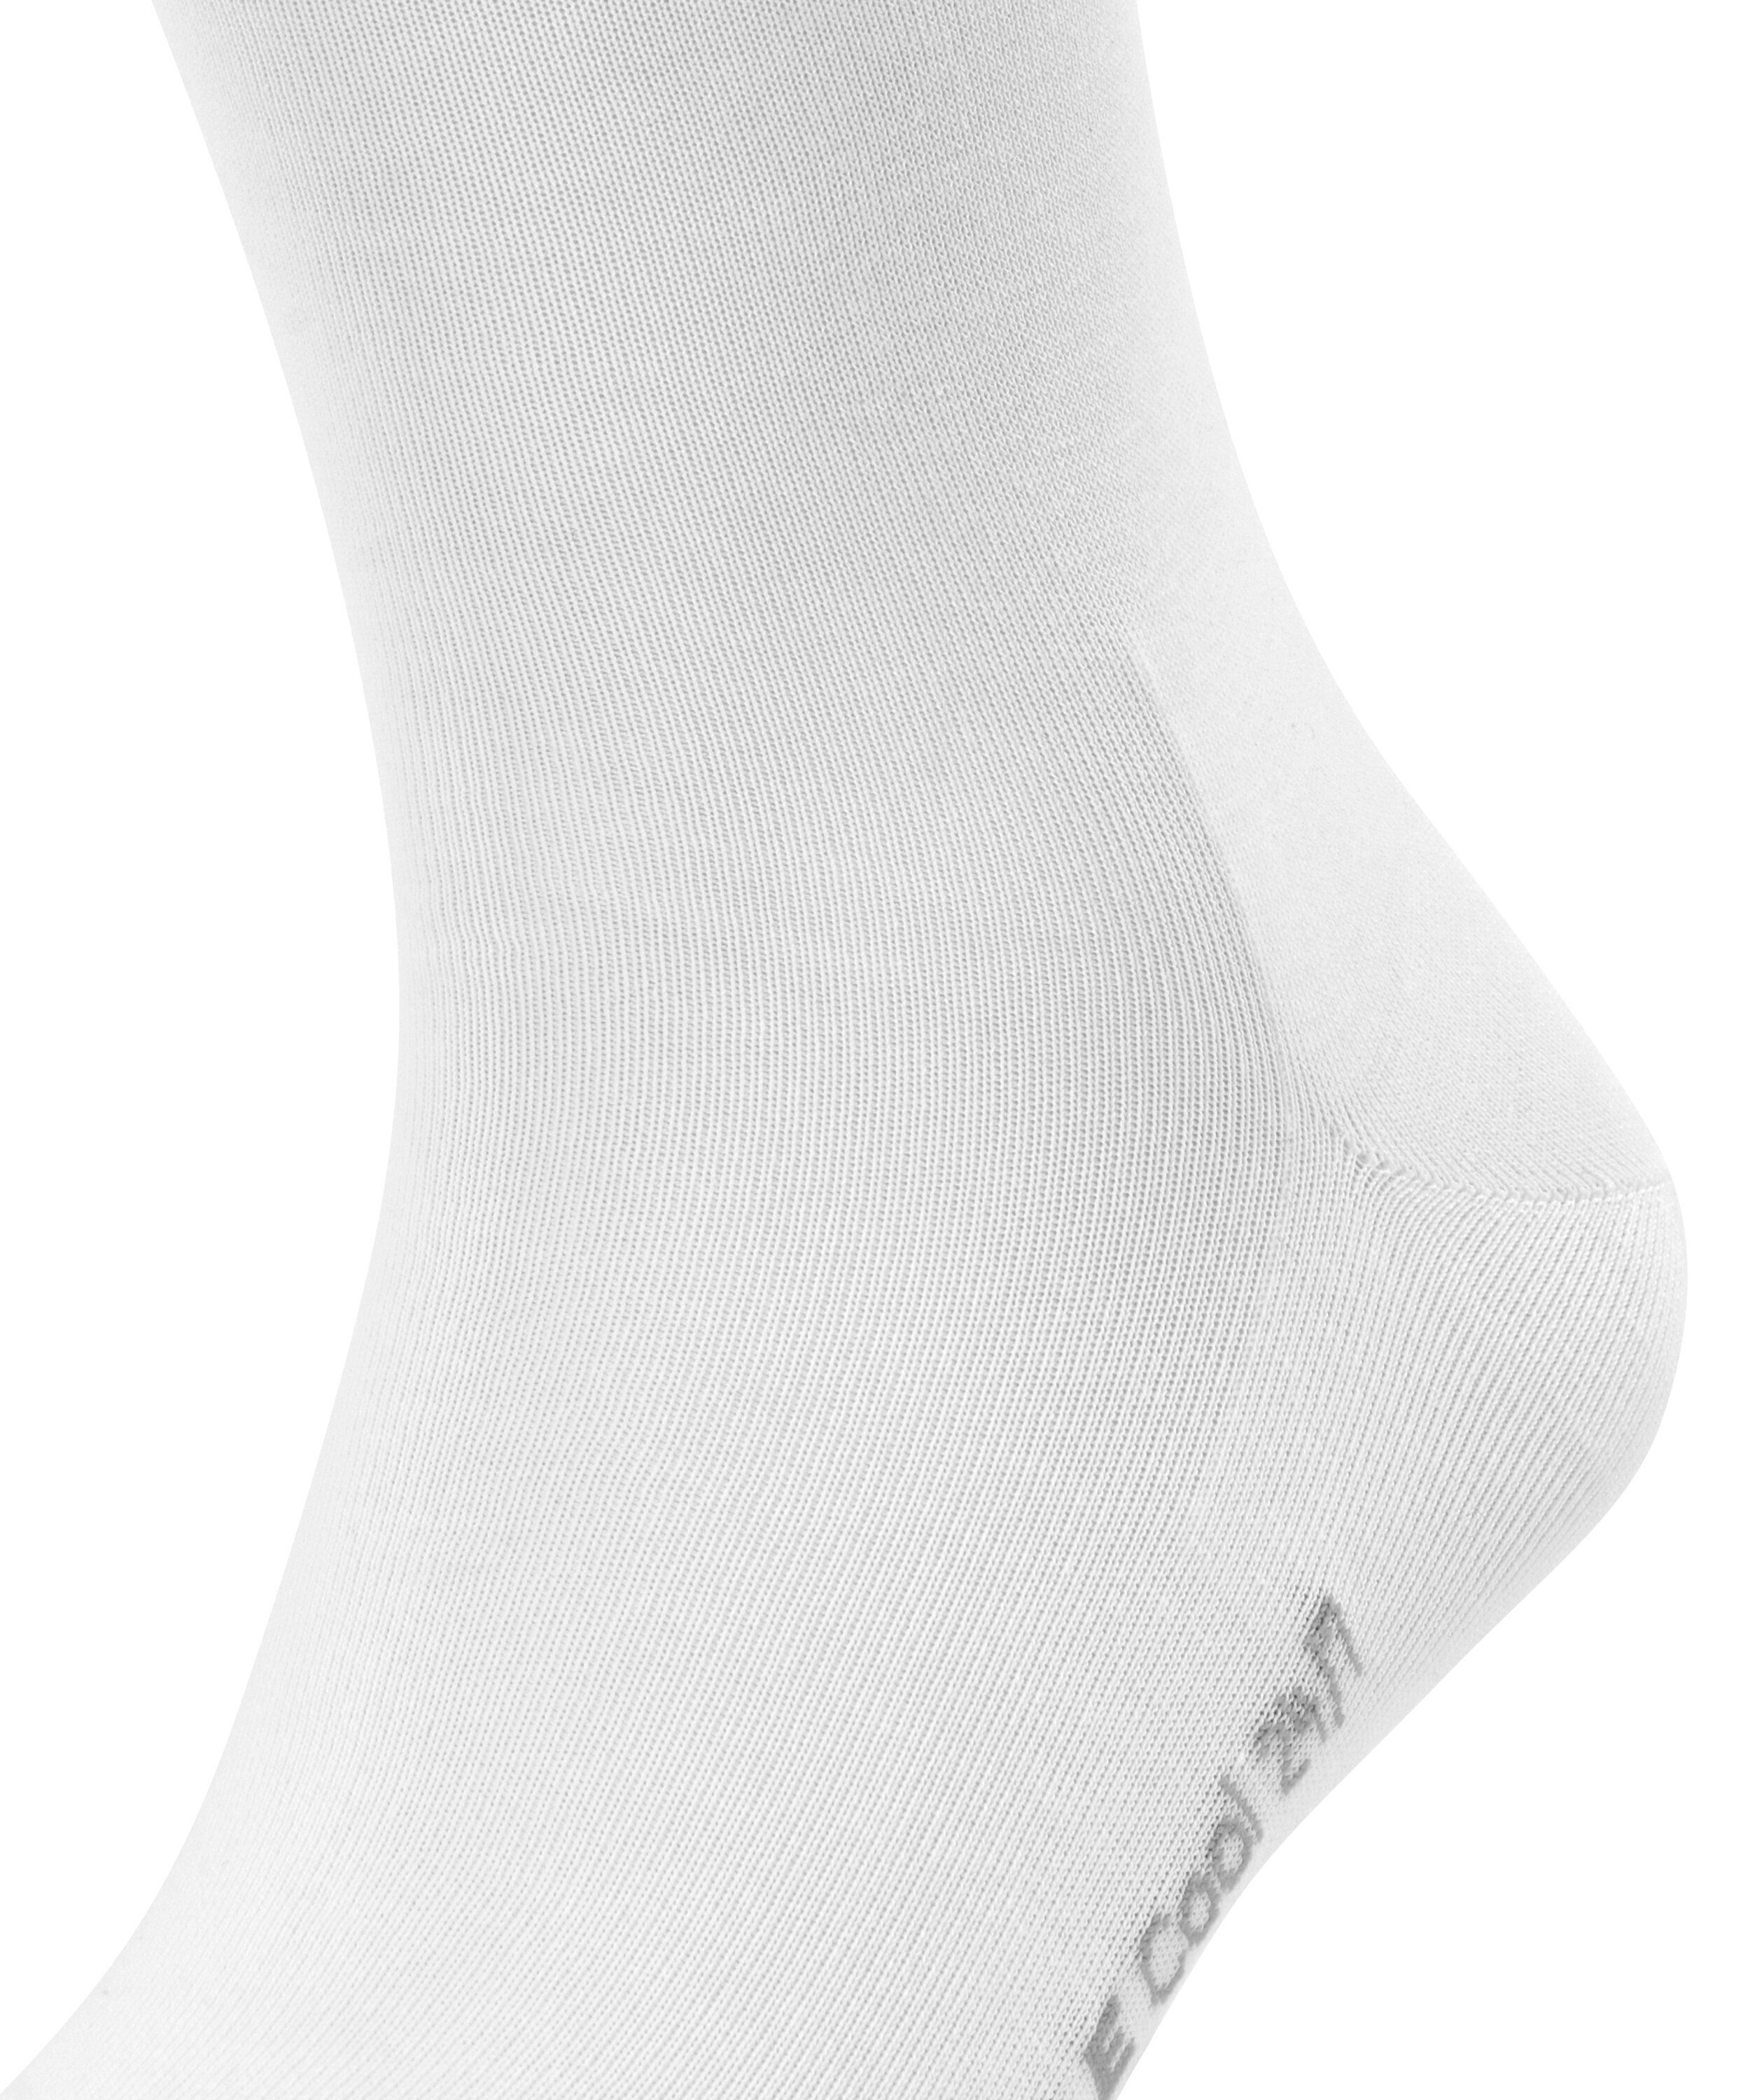 FALKE Socken white 24/7 Cool (2000) (1-Paar)